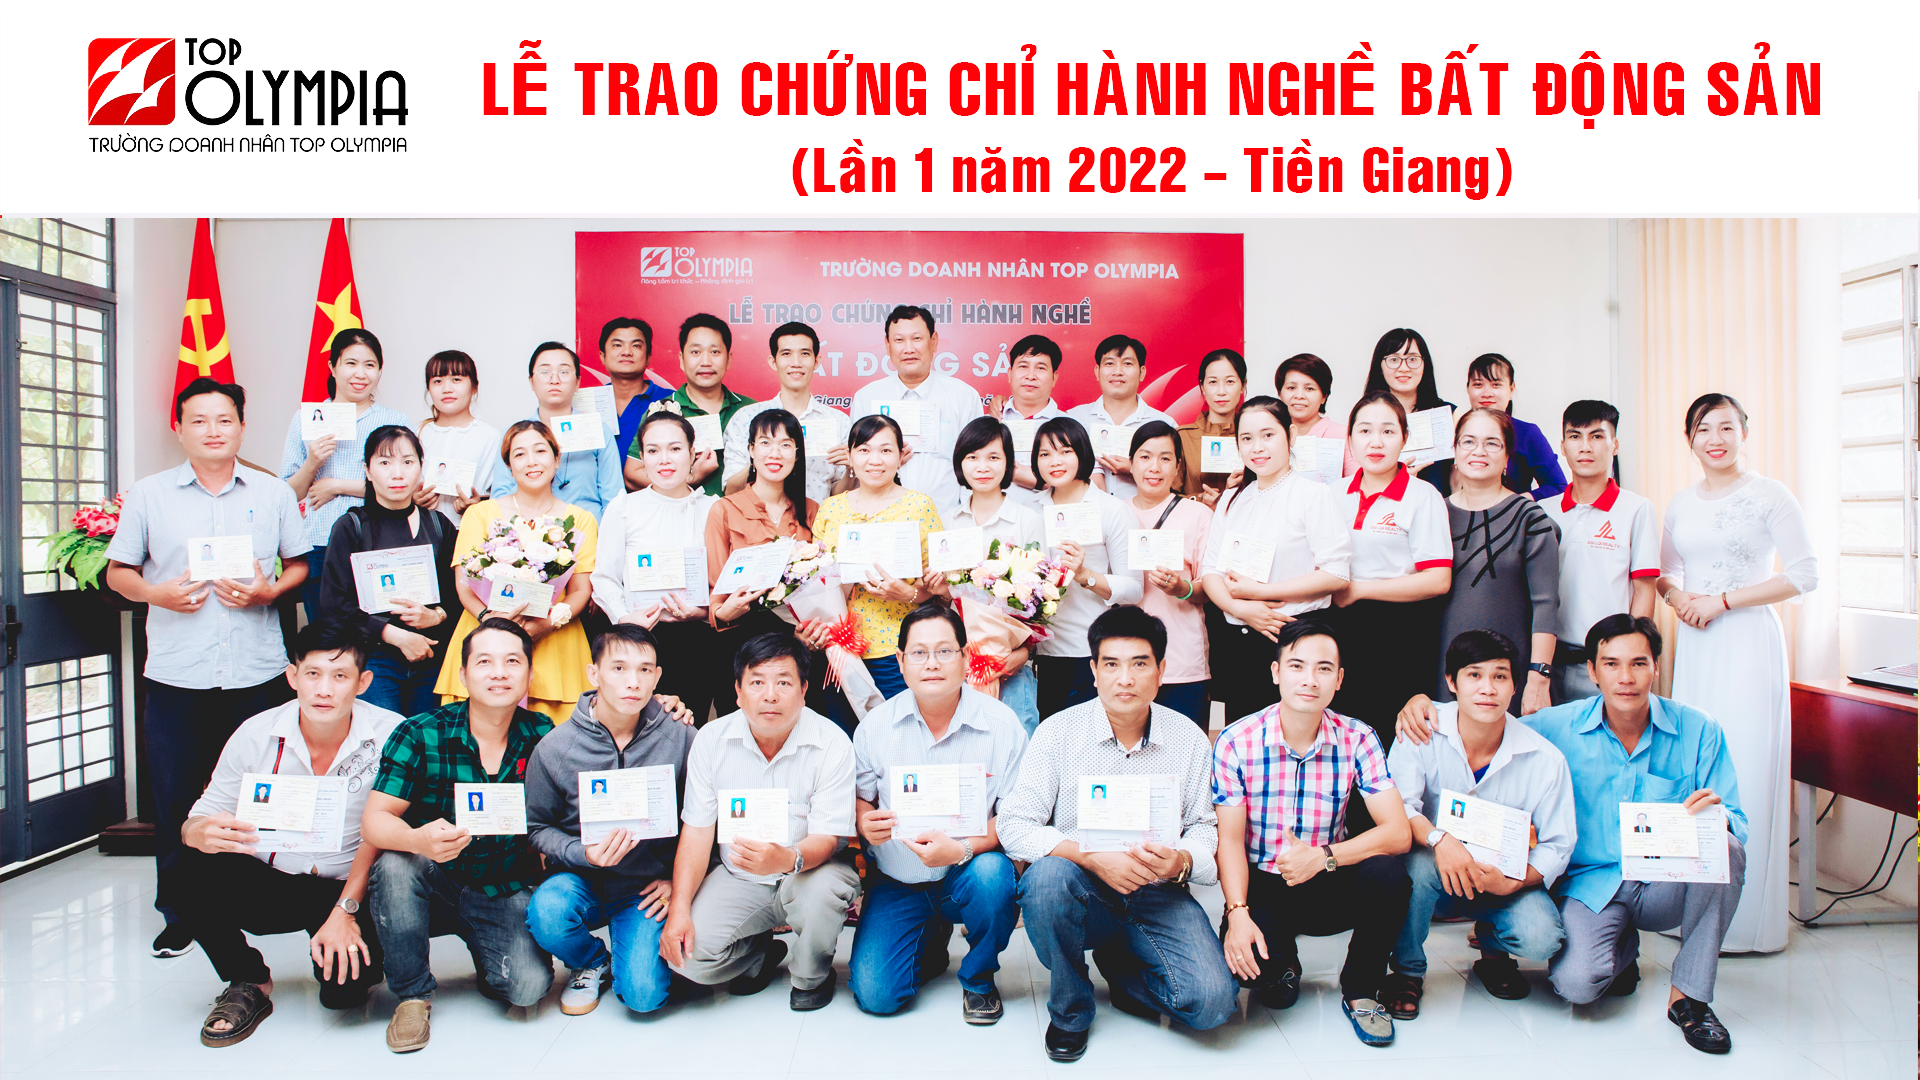 Tien Giang.l1.2022